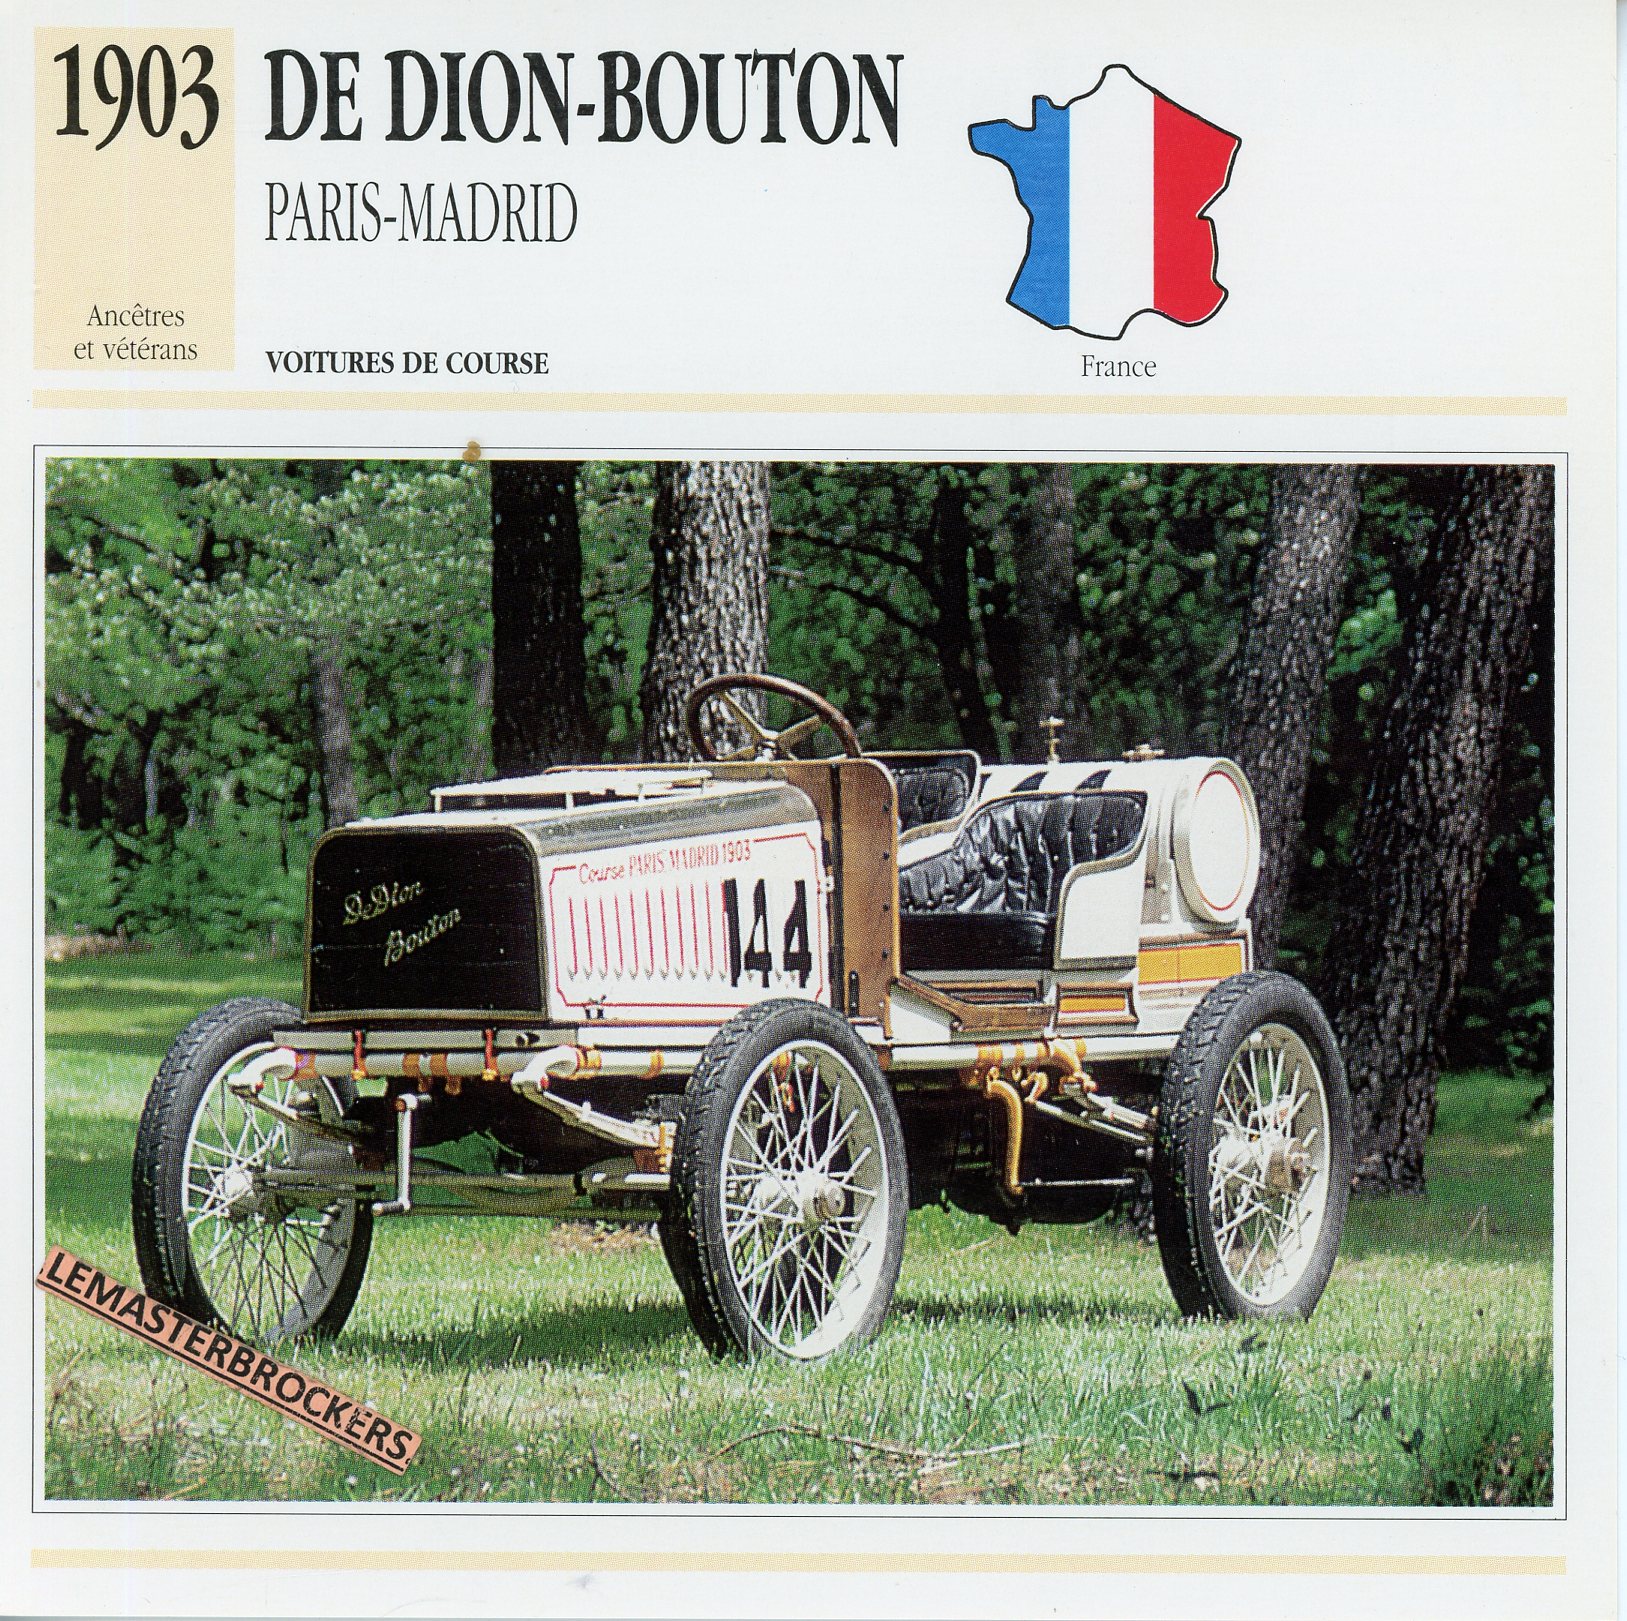 DE-DION-BOUTON-PARIS-MADRID-1903-FICHE-AUTO-ATLAS-LEMASTERBROCKERS